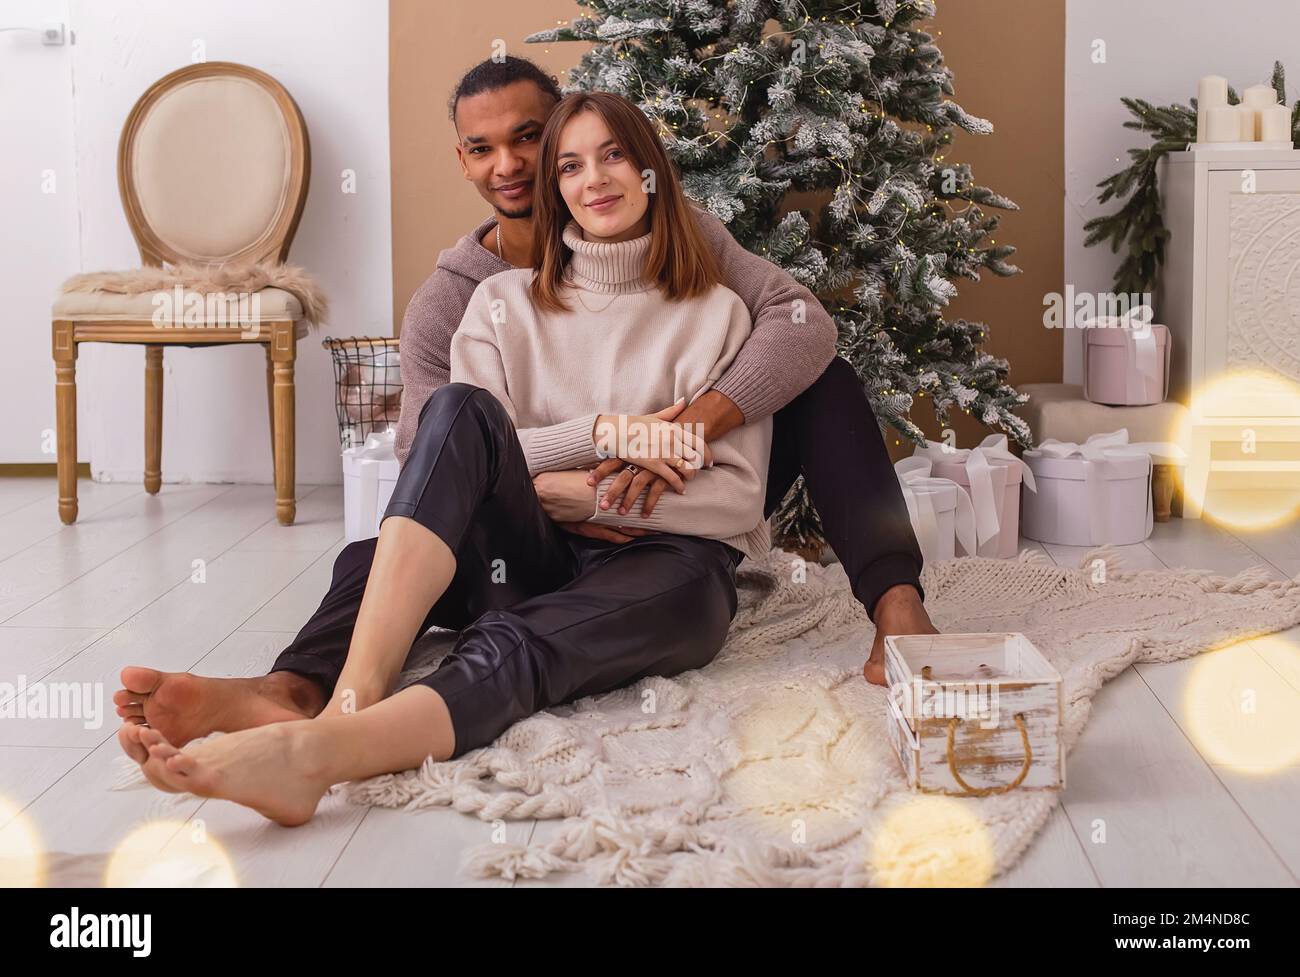 Un ragazzo felice di stile in una felpa marrone è seduto abbracciando la sua ragazza, vicino all'albero di Natale Foto Stock